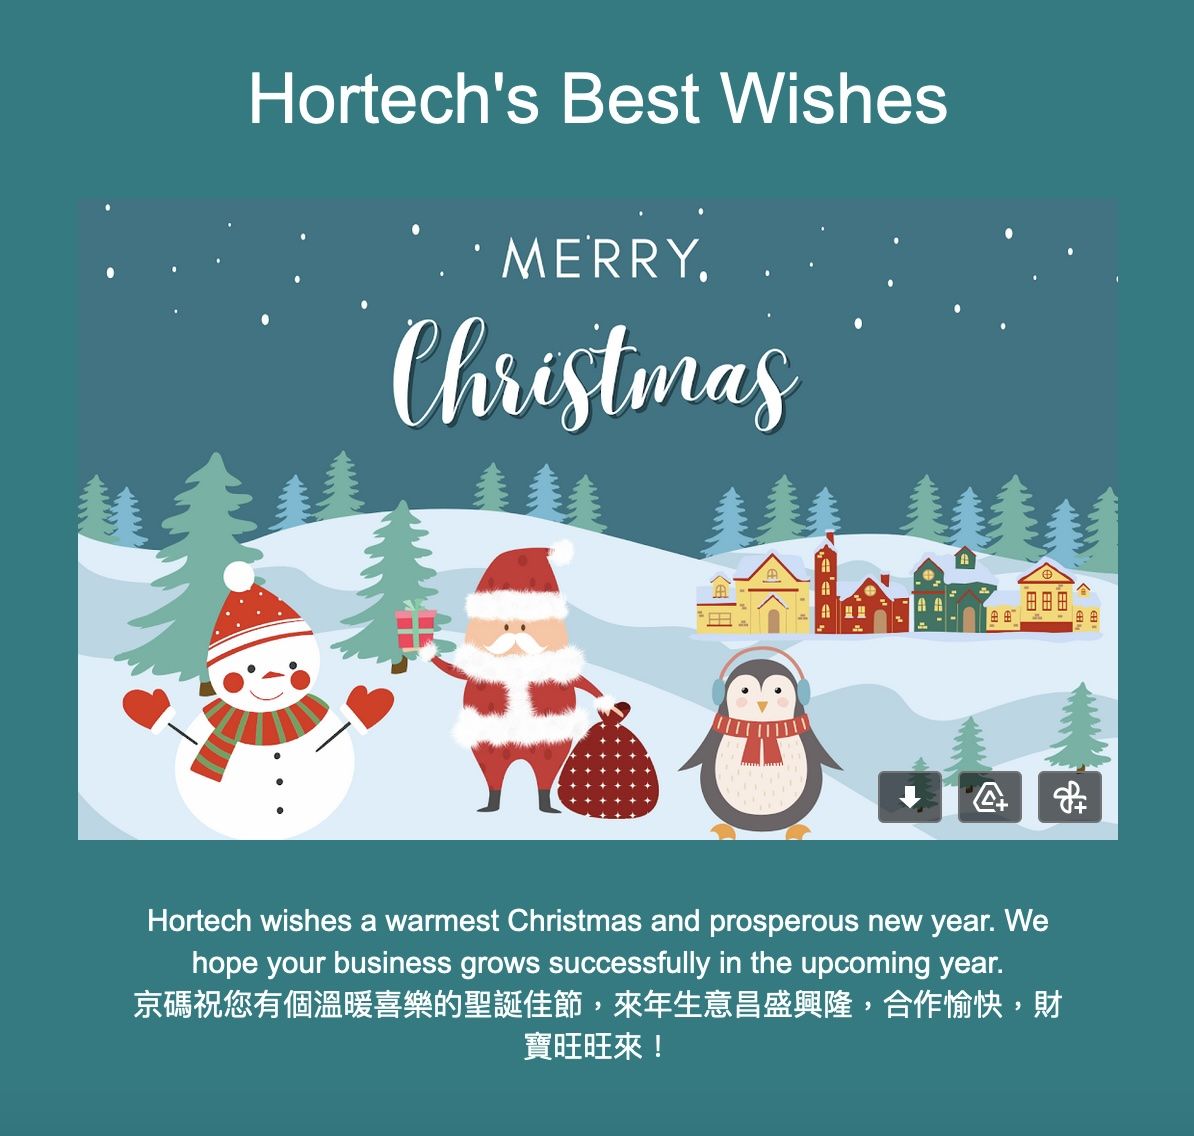 Hortech les desea una Feliz Navidad y un próspero año nuevo.